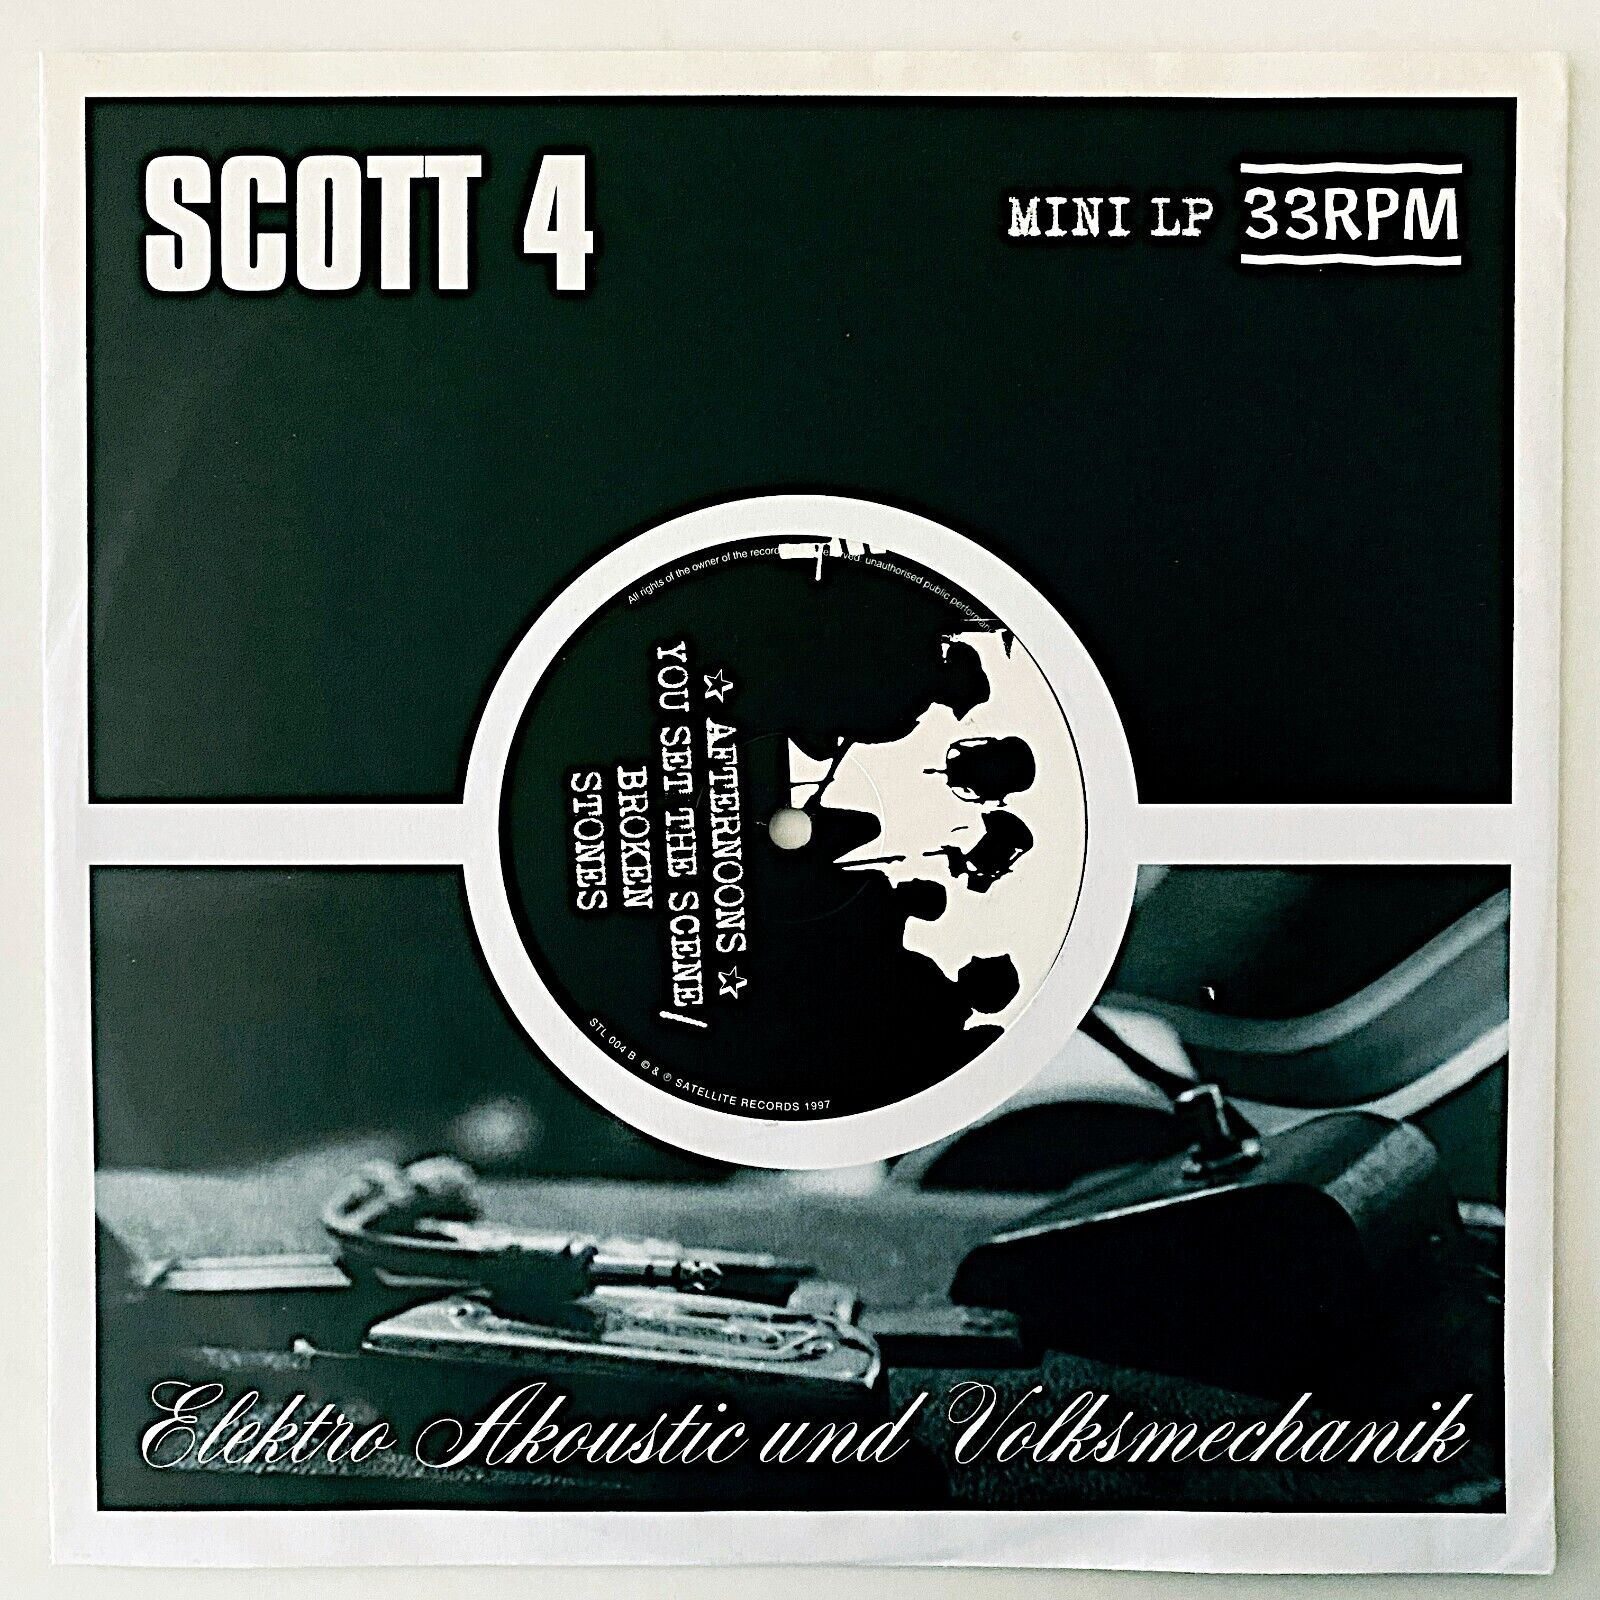 SCOTT 4 - ELEKTRO AKOUSTIC - 1998 UK VINYL 10 MINI-ALBUM 33 ⅓ RPM - VG+/VG+